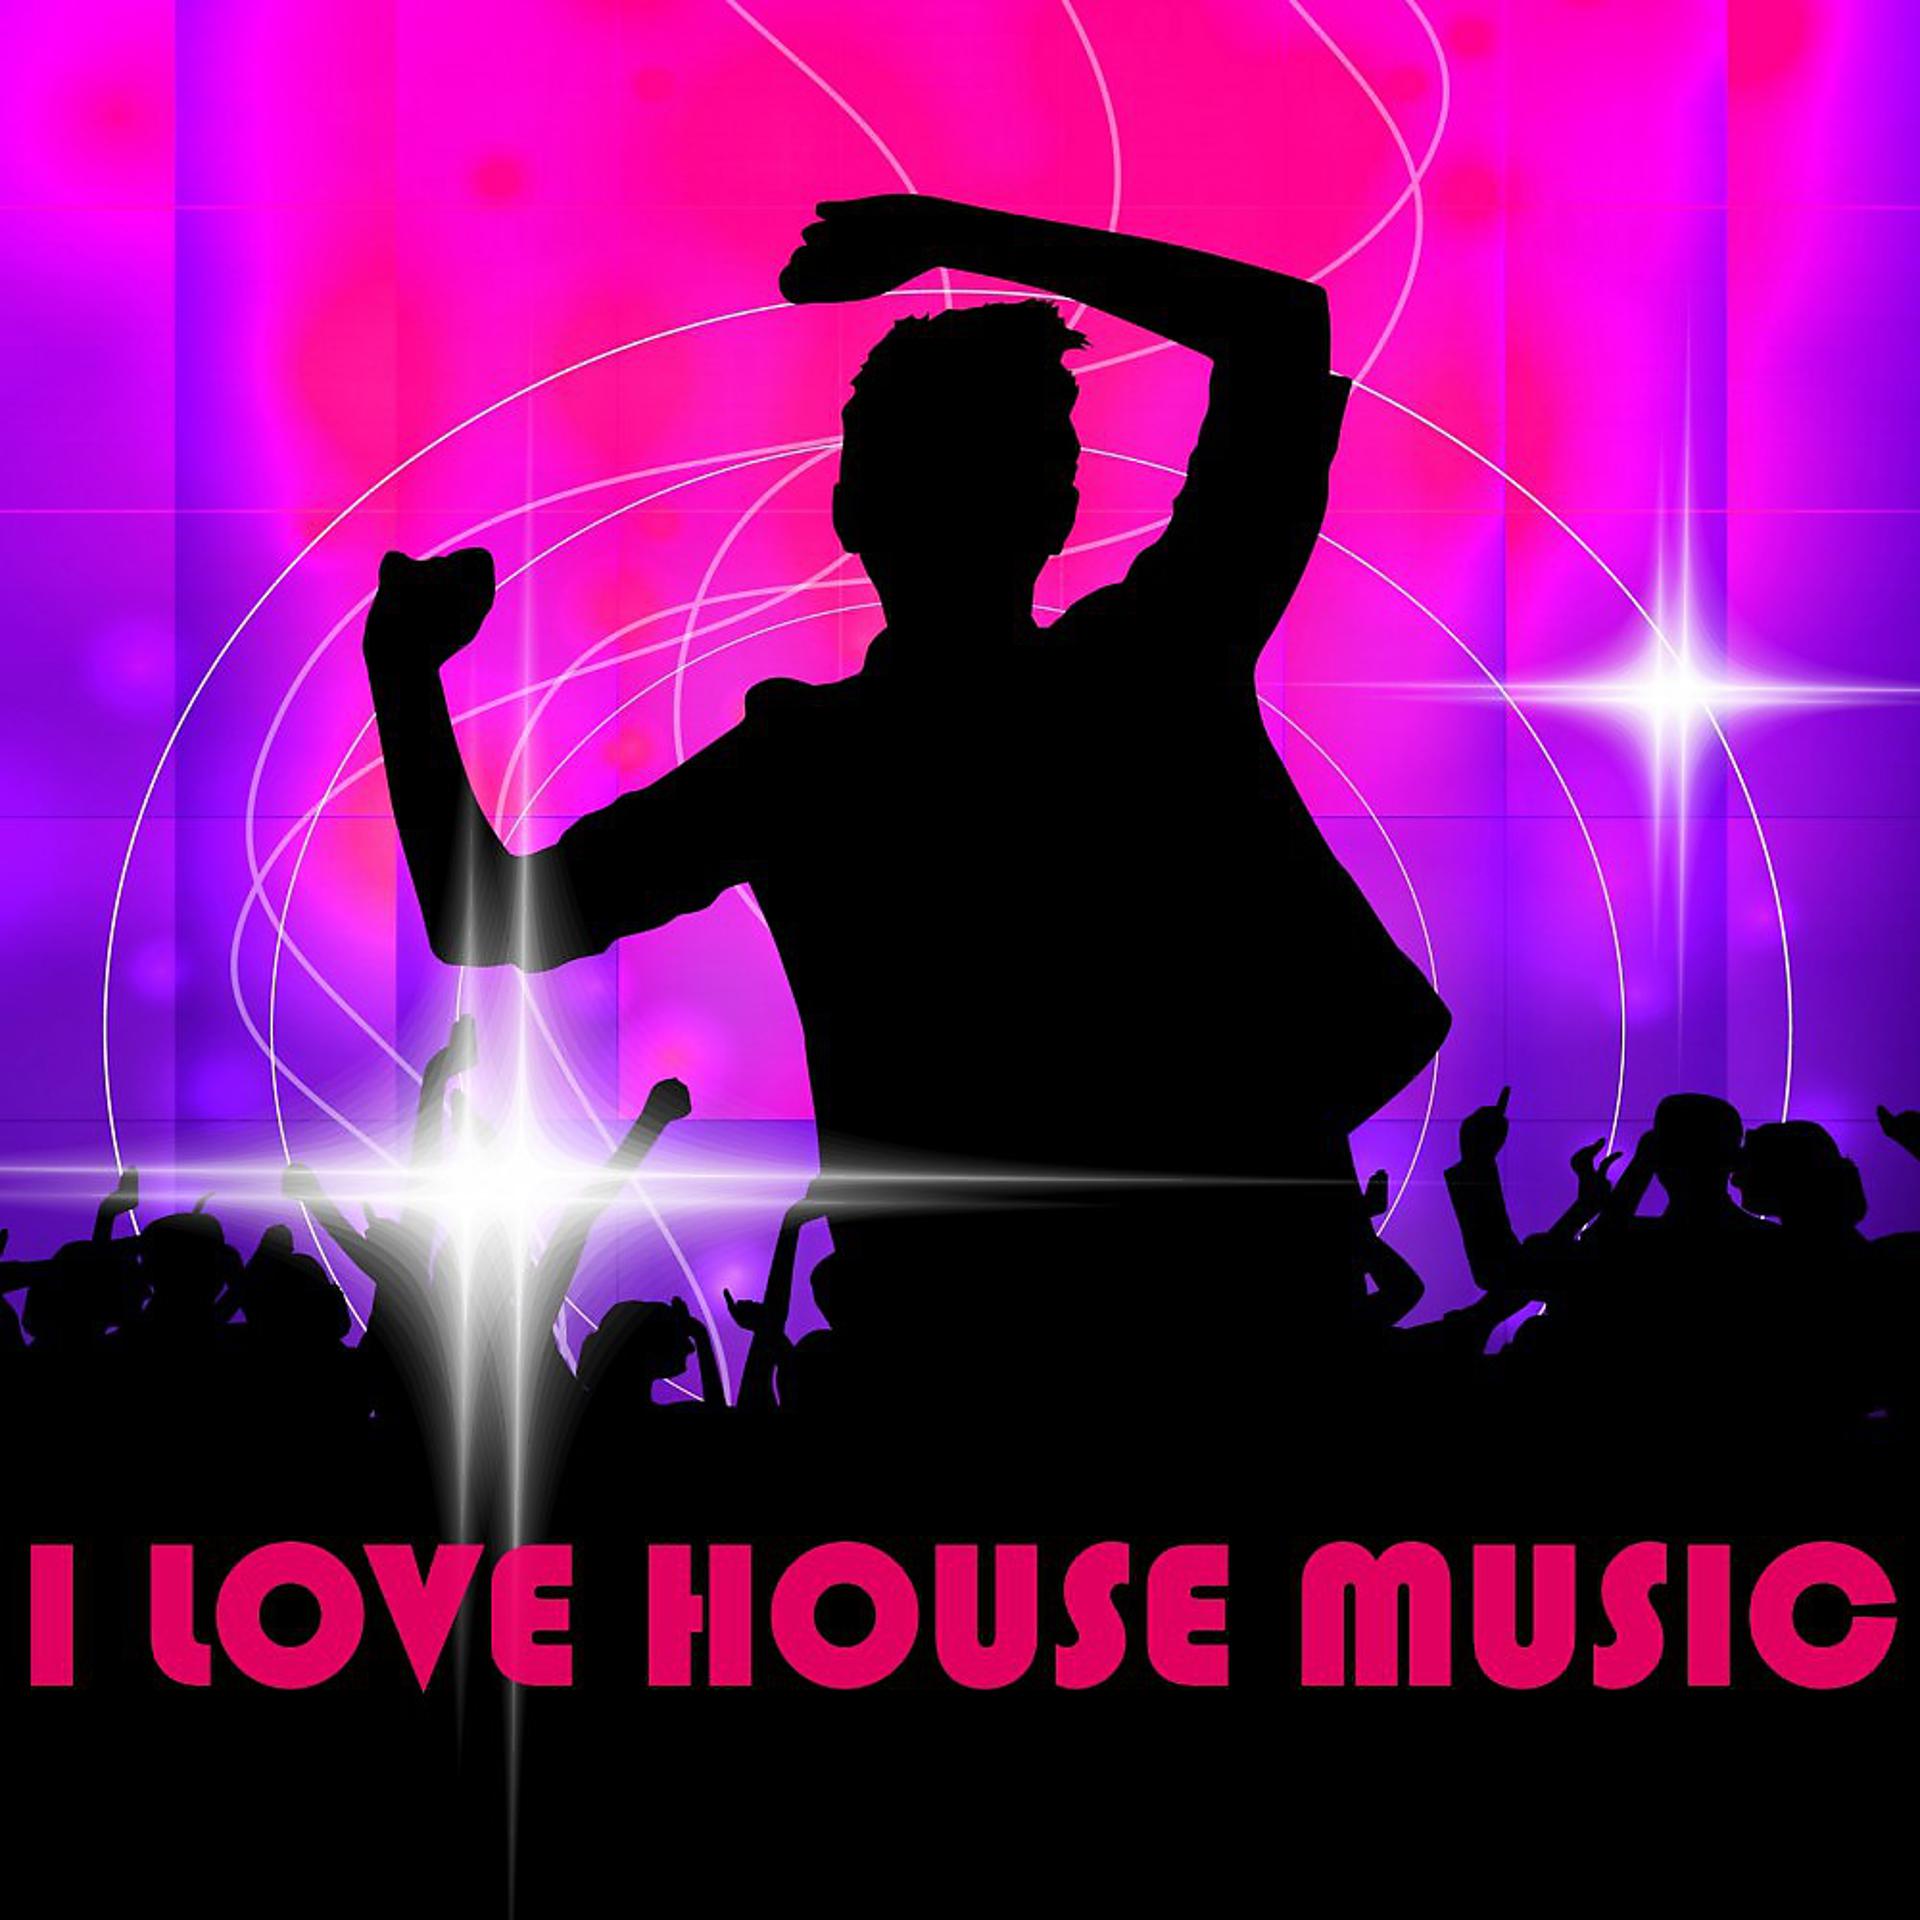 Песня house music. Хаус Мьюзик. Жанры электронной музыки Хаус. House Music обложка. Хаус музыка картинки.